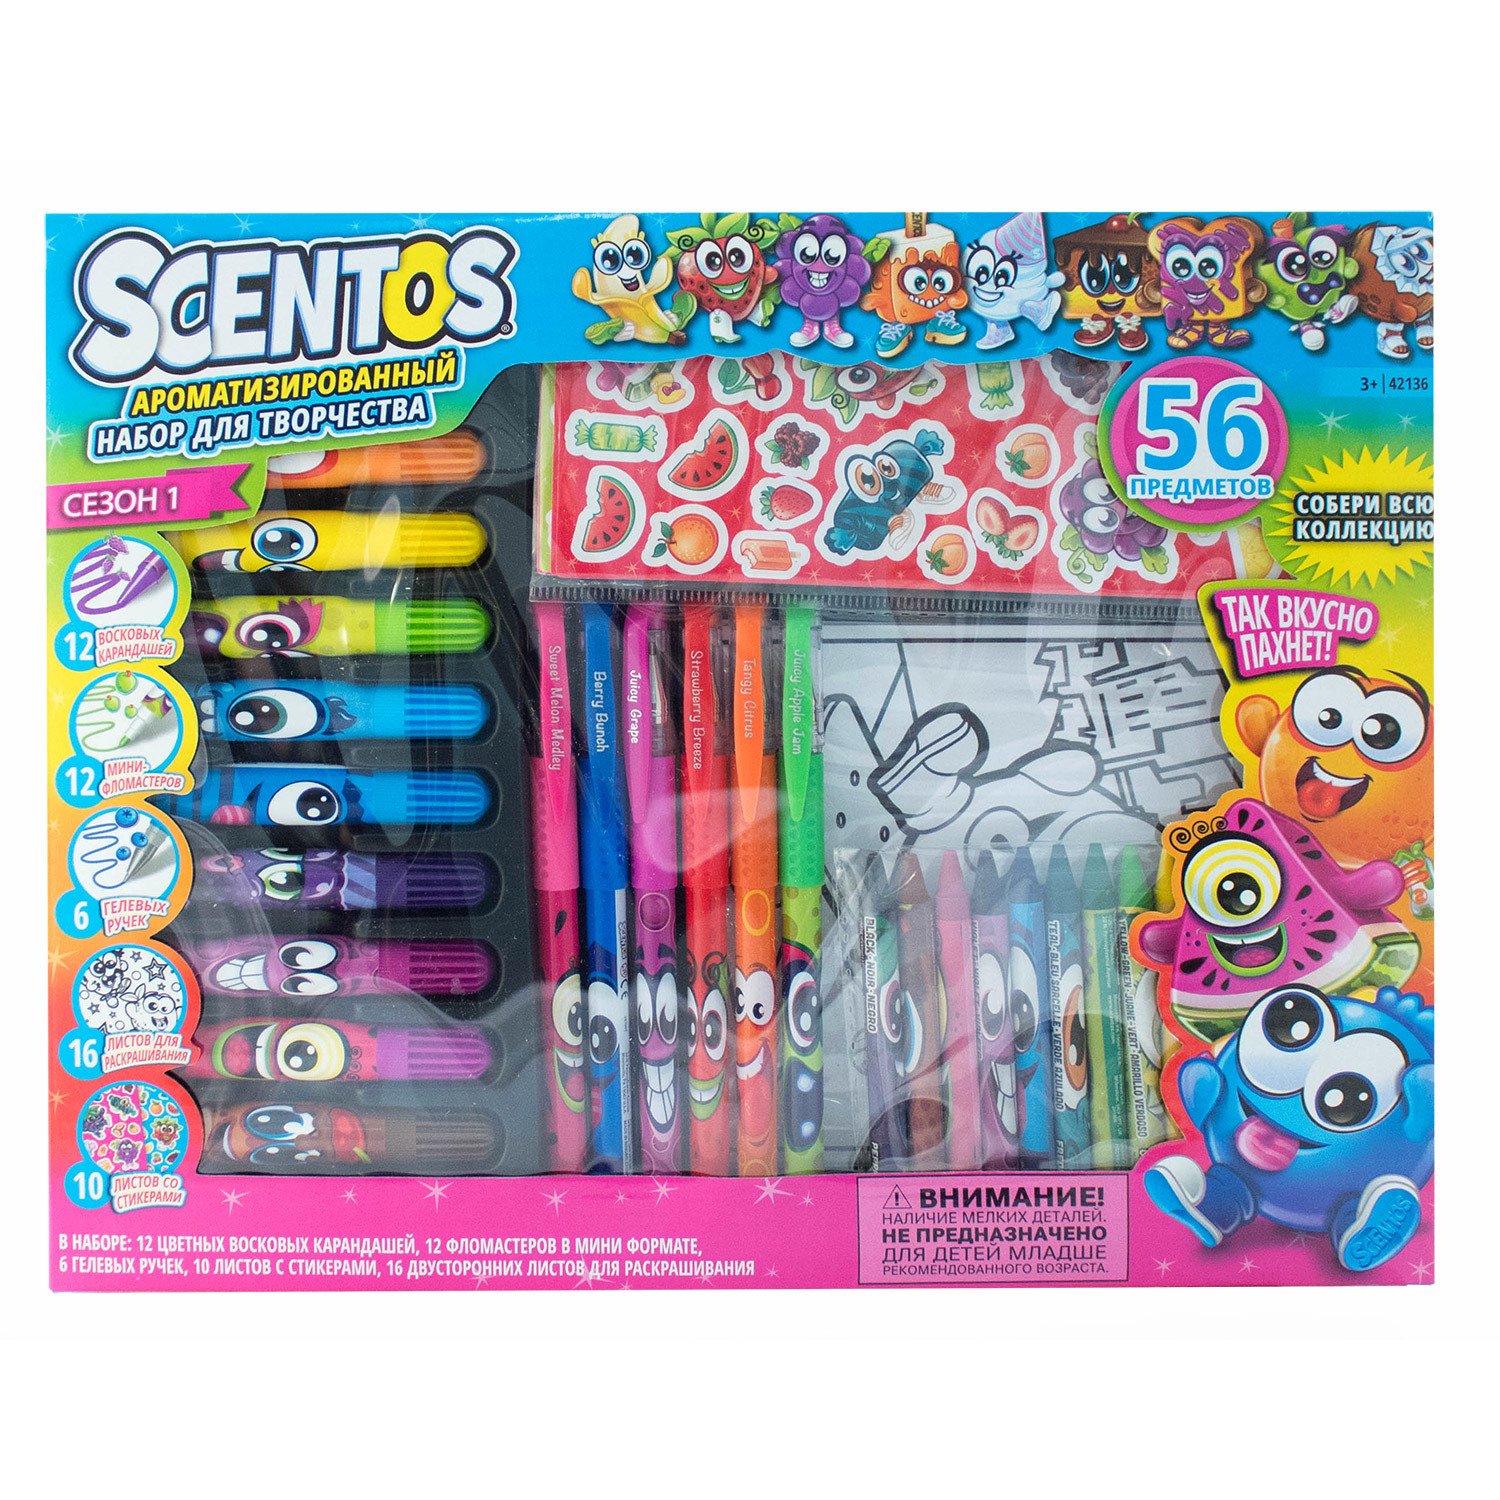 Игровой набор Scentos для творчества Scentos, 56 предметов